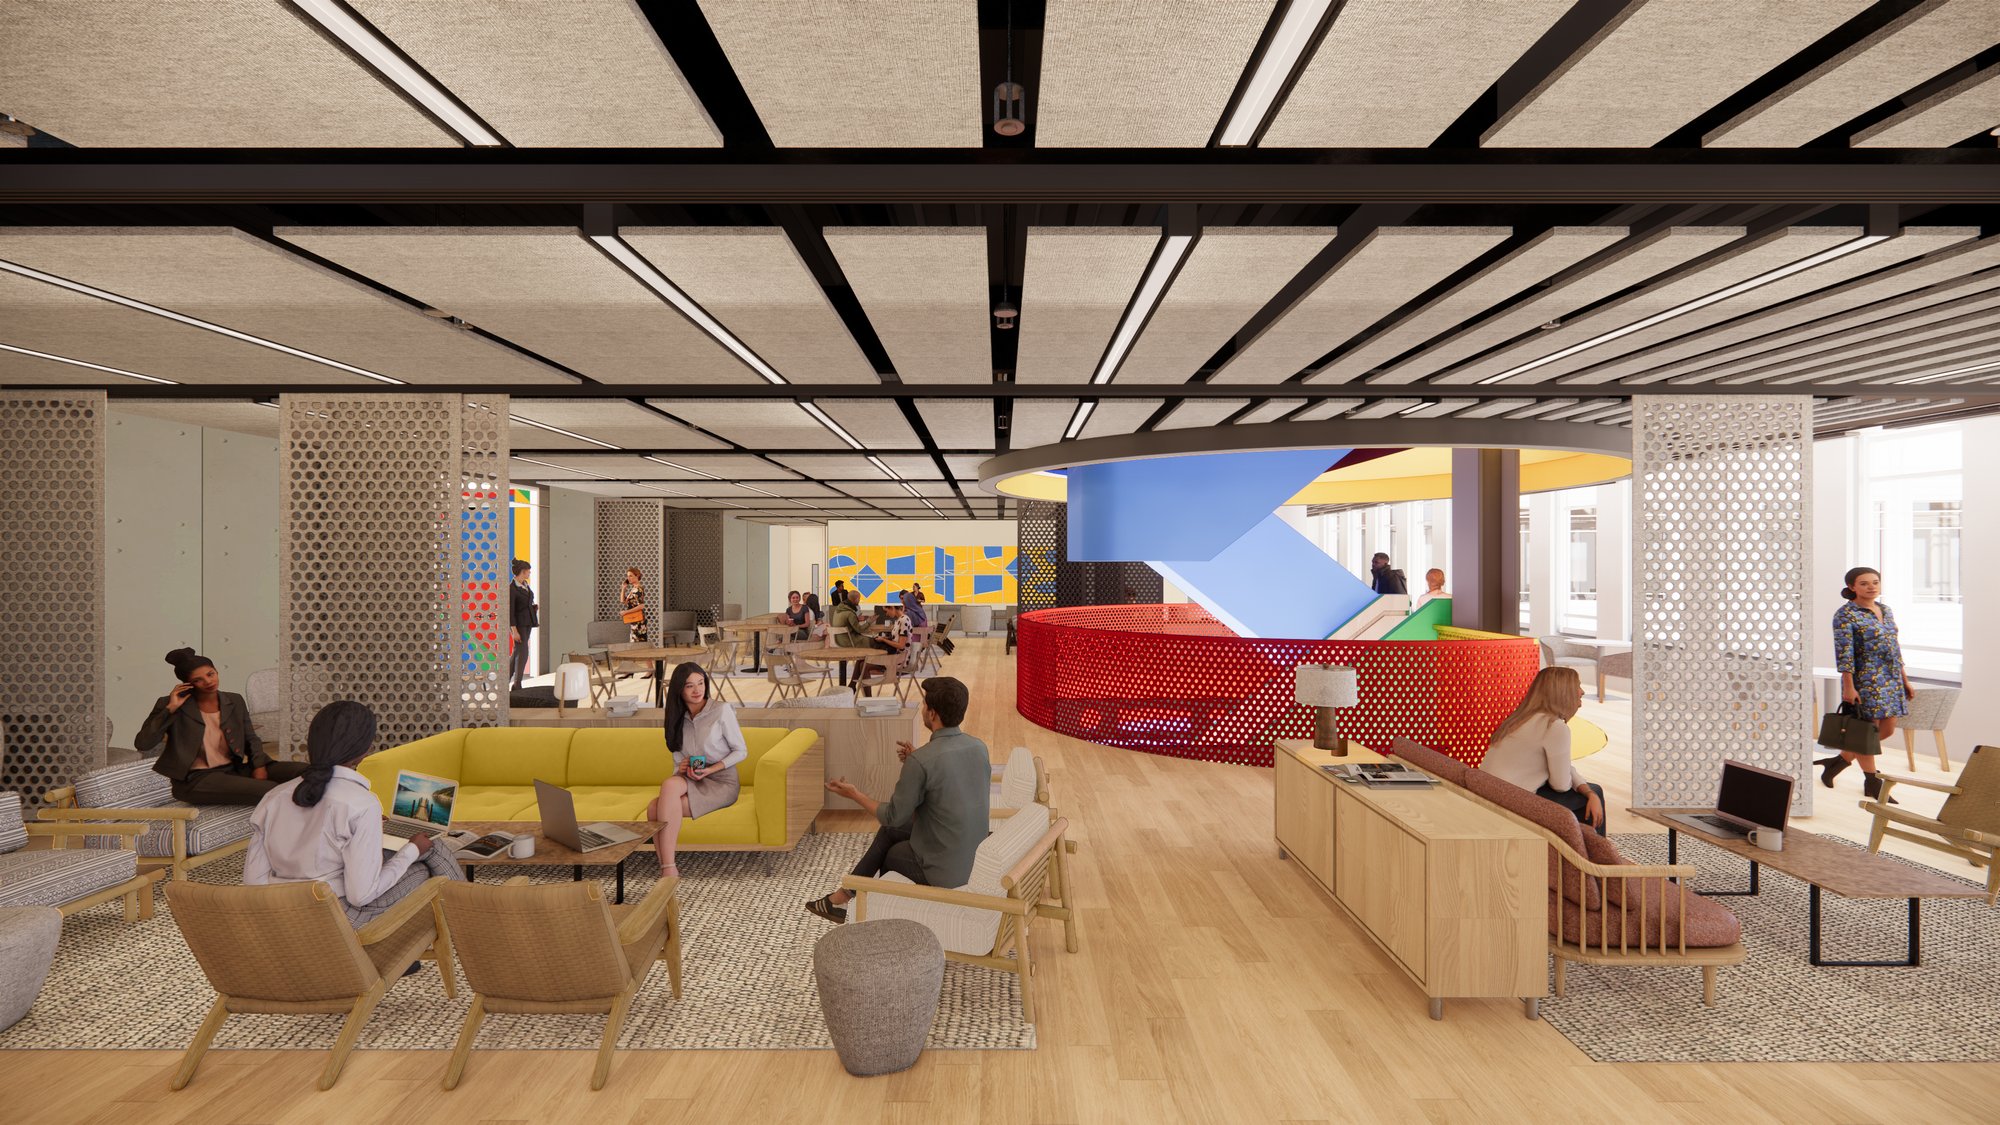 Kerroksiin on tulossa uudet aula-alueet. Kuva: BDG Architects.